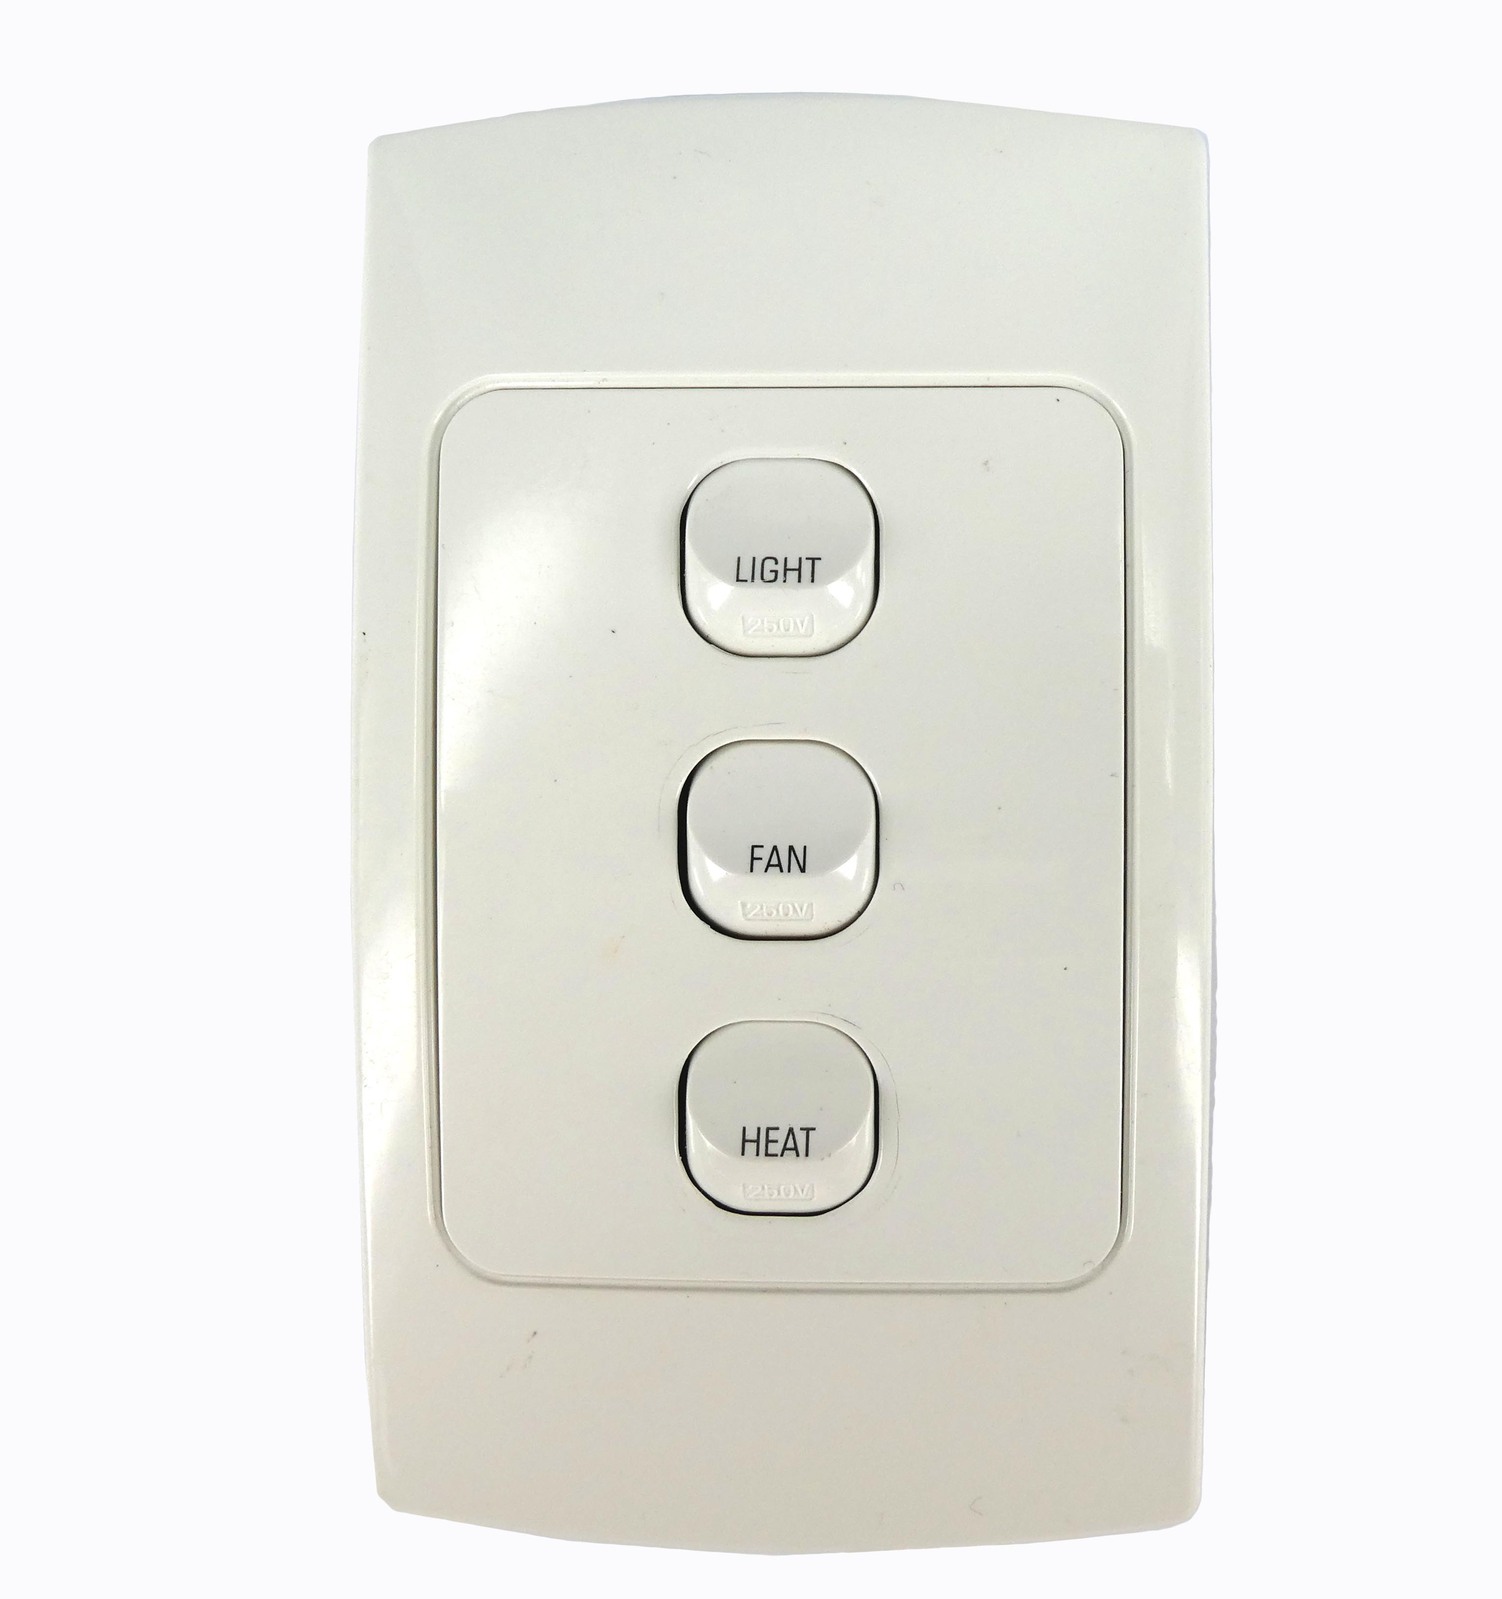 Light Fan Heat Bathroom Replacement Switch